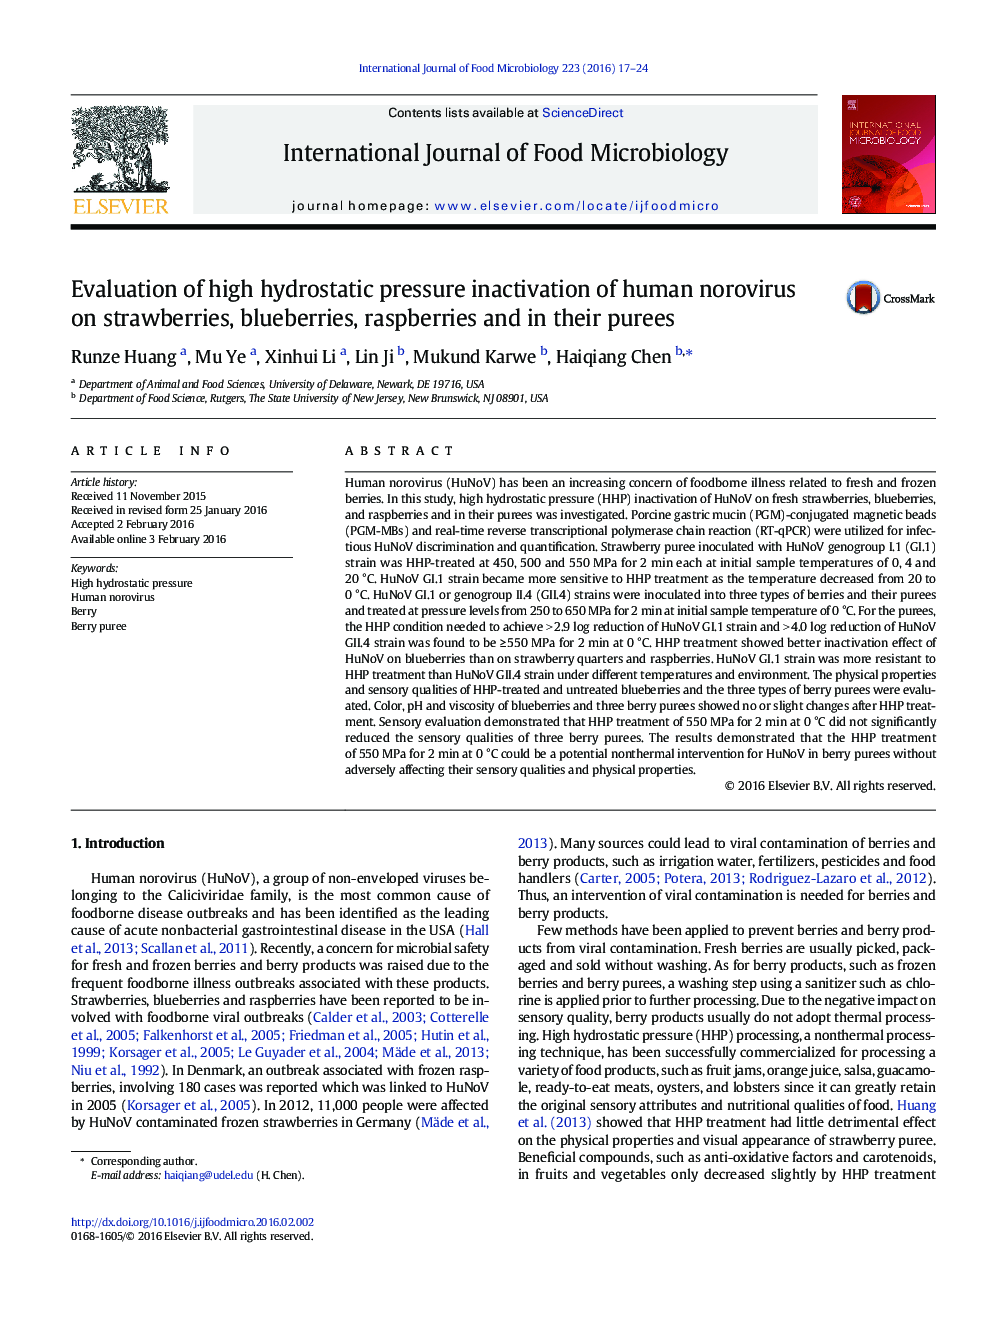 ارزیابی غیر فعال شدن فشار هیدرواستاتیک نووروویروس انسانی بر توت فرنگی، زغال اخته، تمشک و پوره آنها 